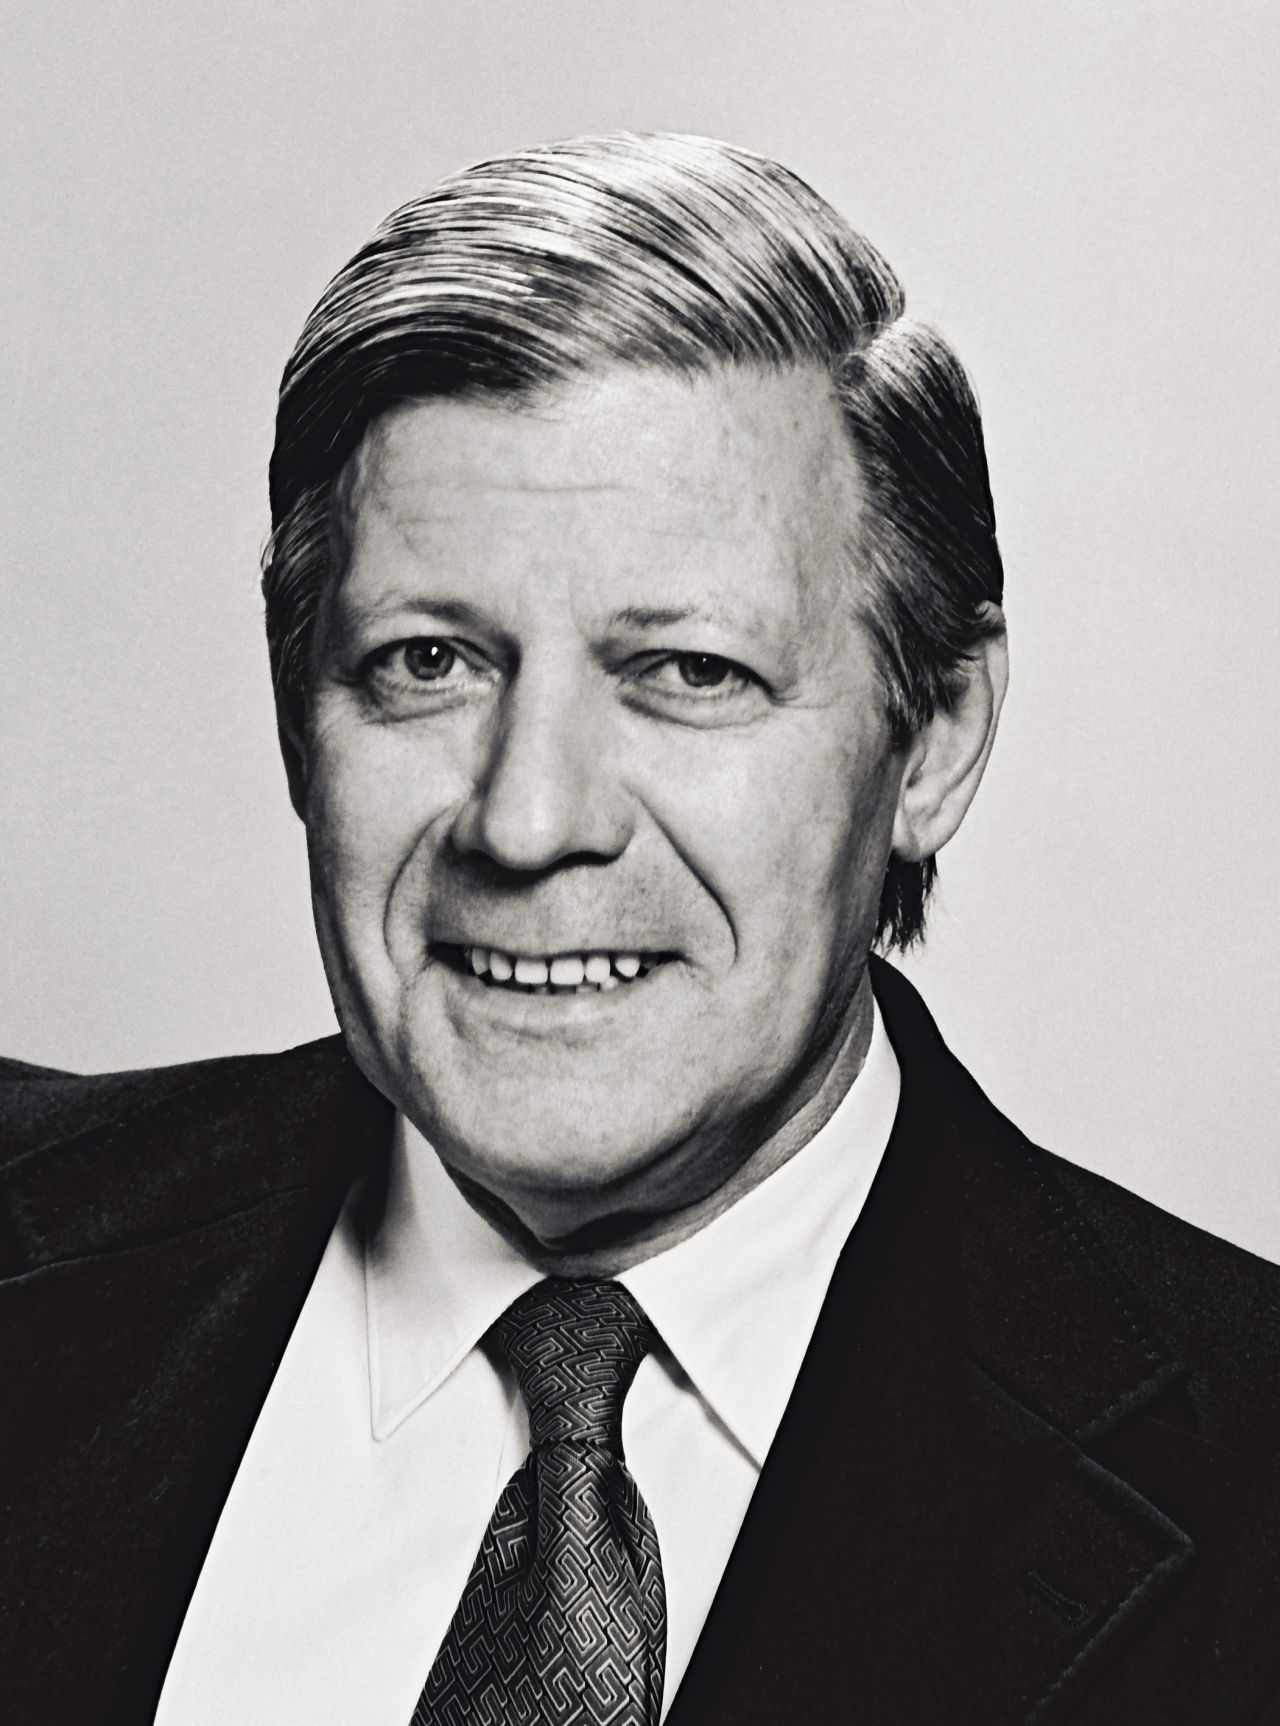 Offizielles Porträt des Bundeskanzlers Helmut Schmidt, Bonn 01.01.1977